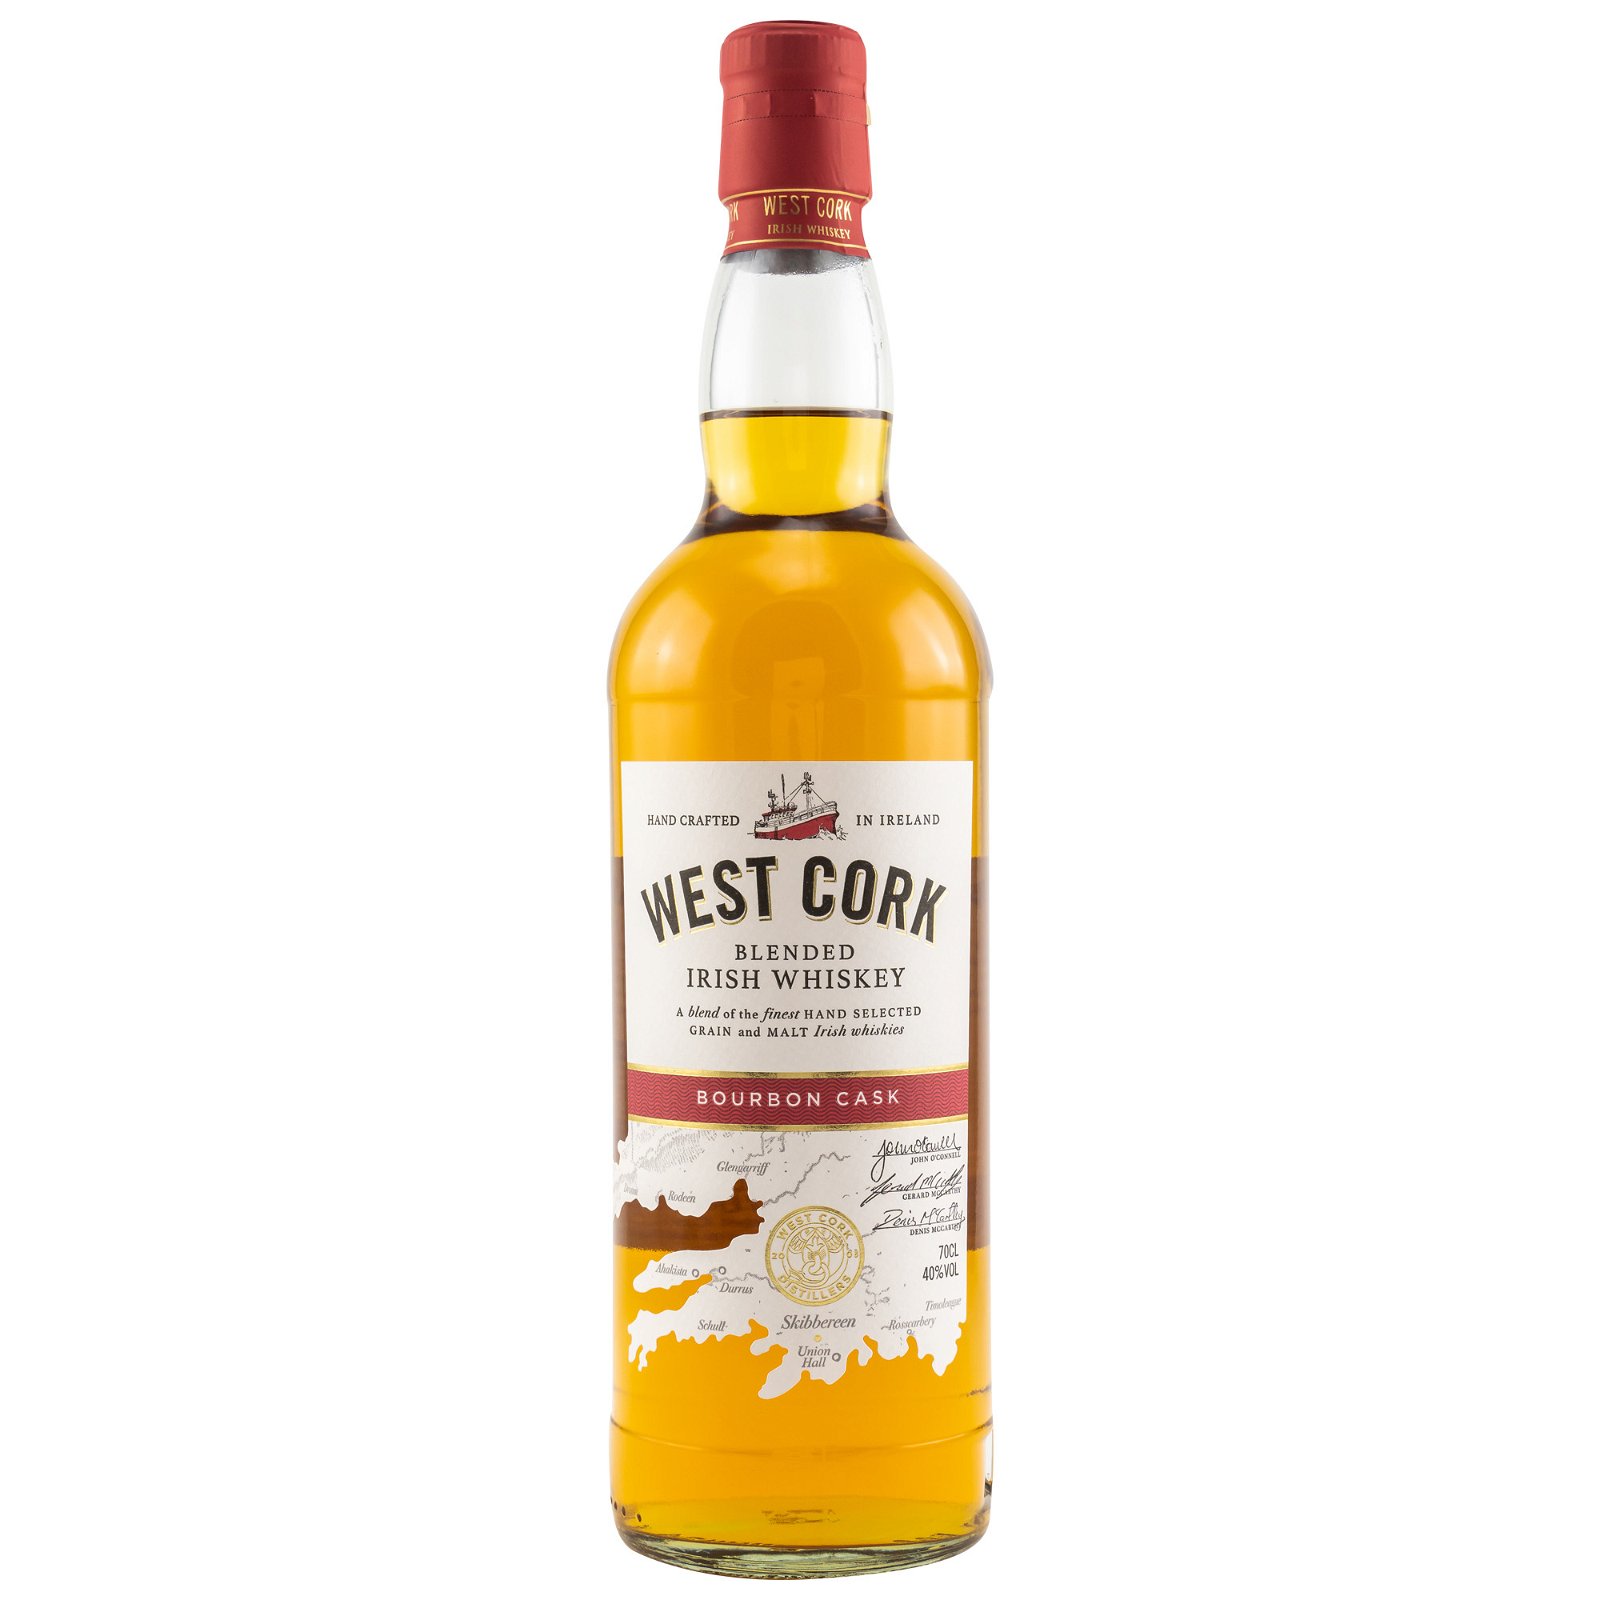 West Cork Original Blend Bourbon Cask (Irland)